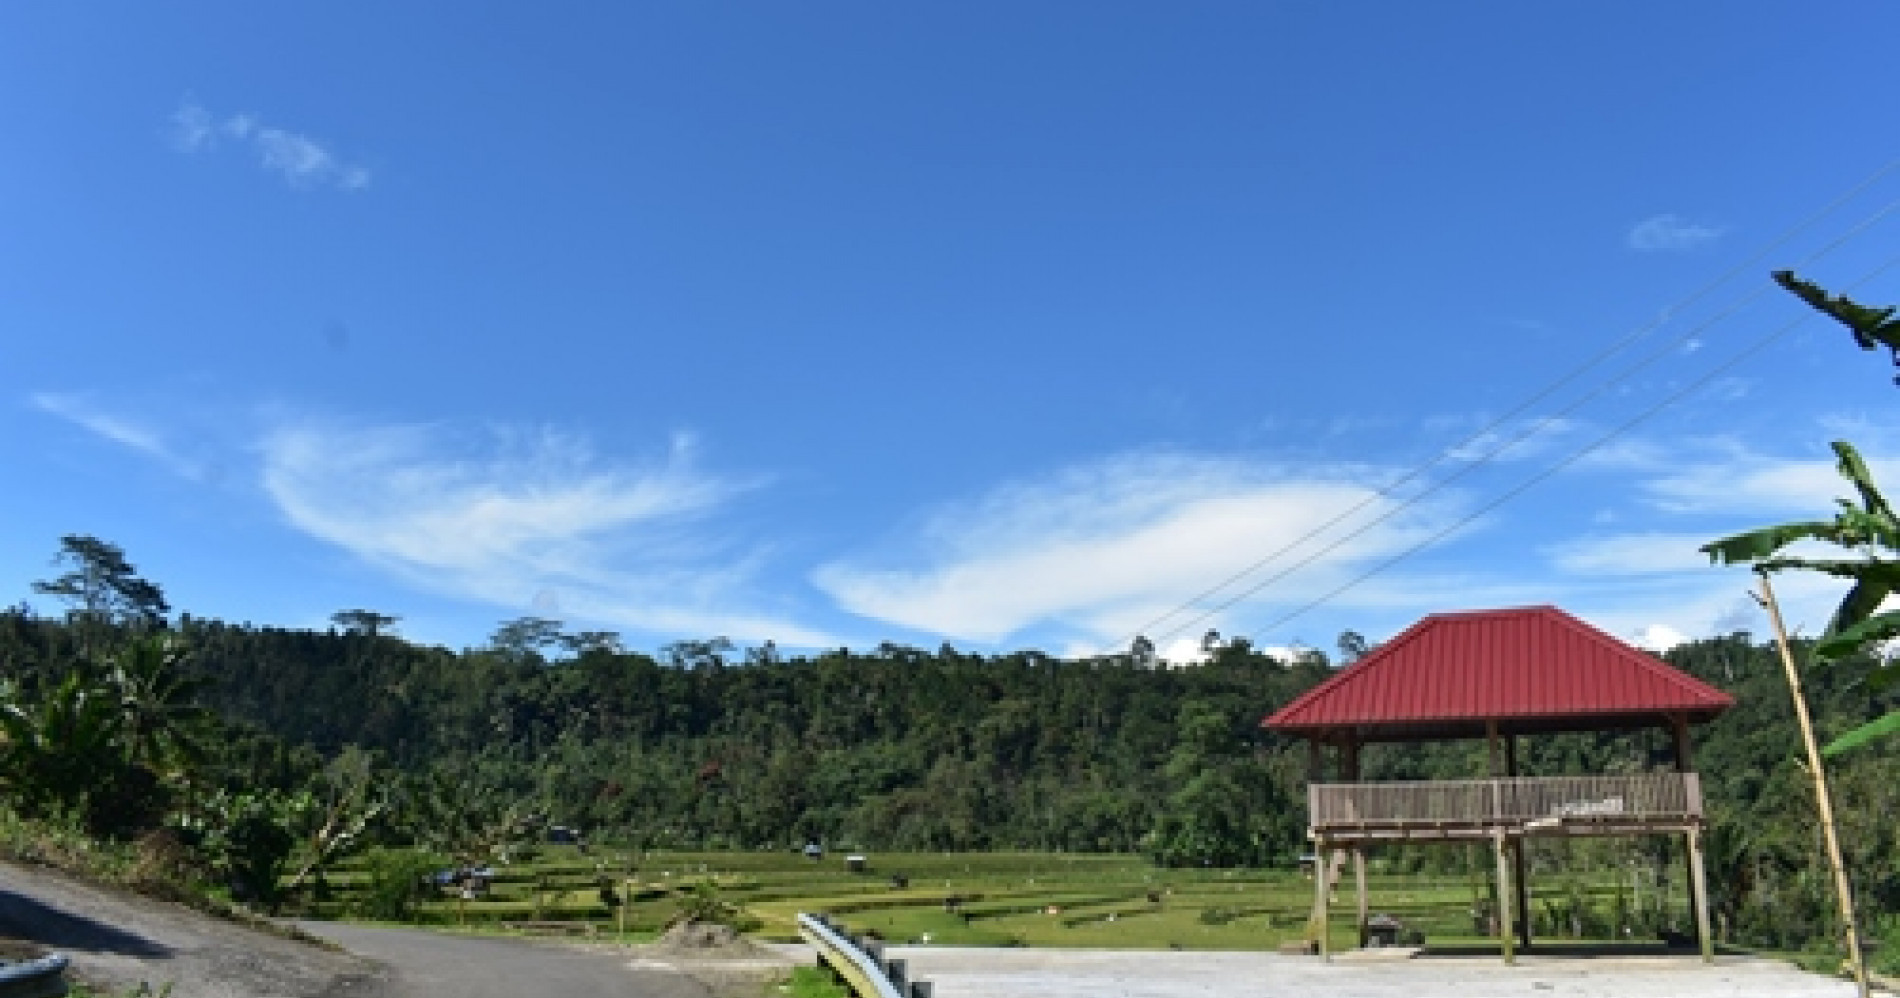 Desa Pattaneteang, sumber gambar: Asdar Marannuang.